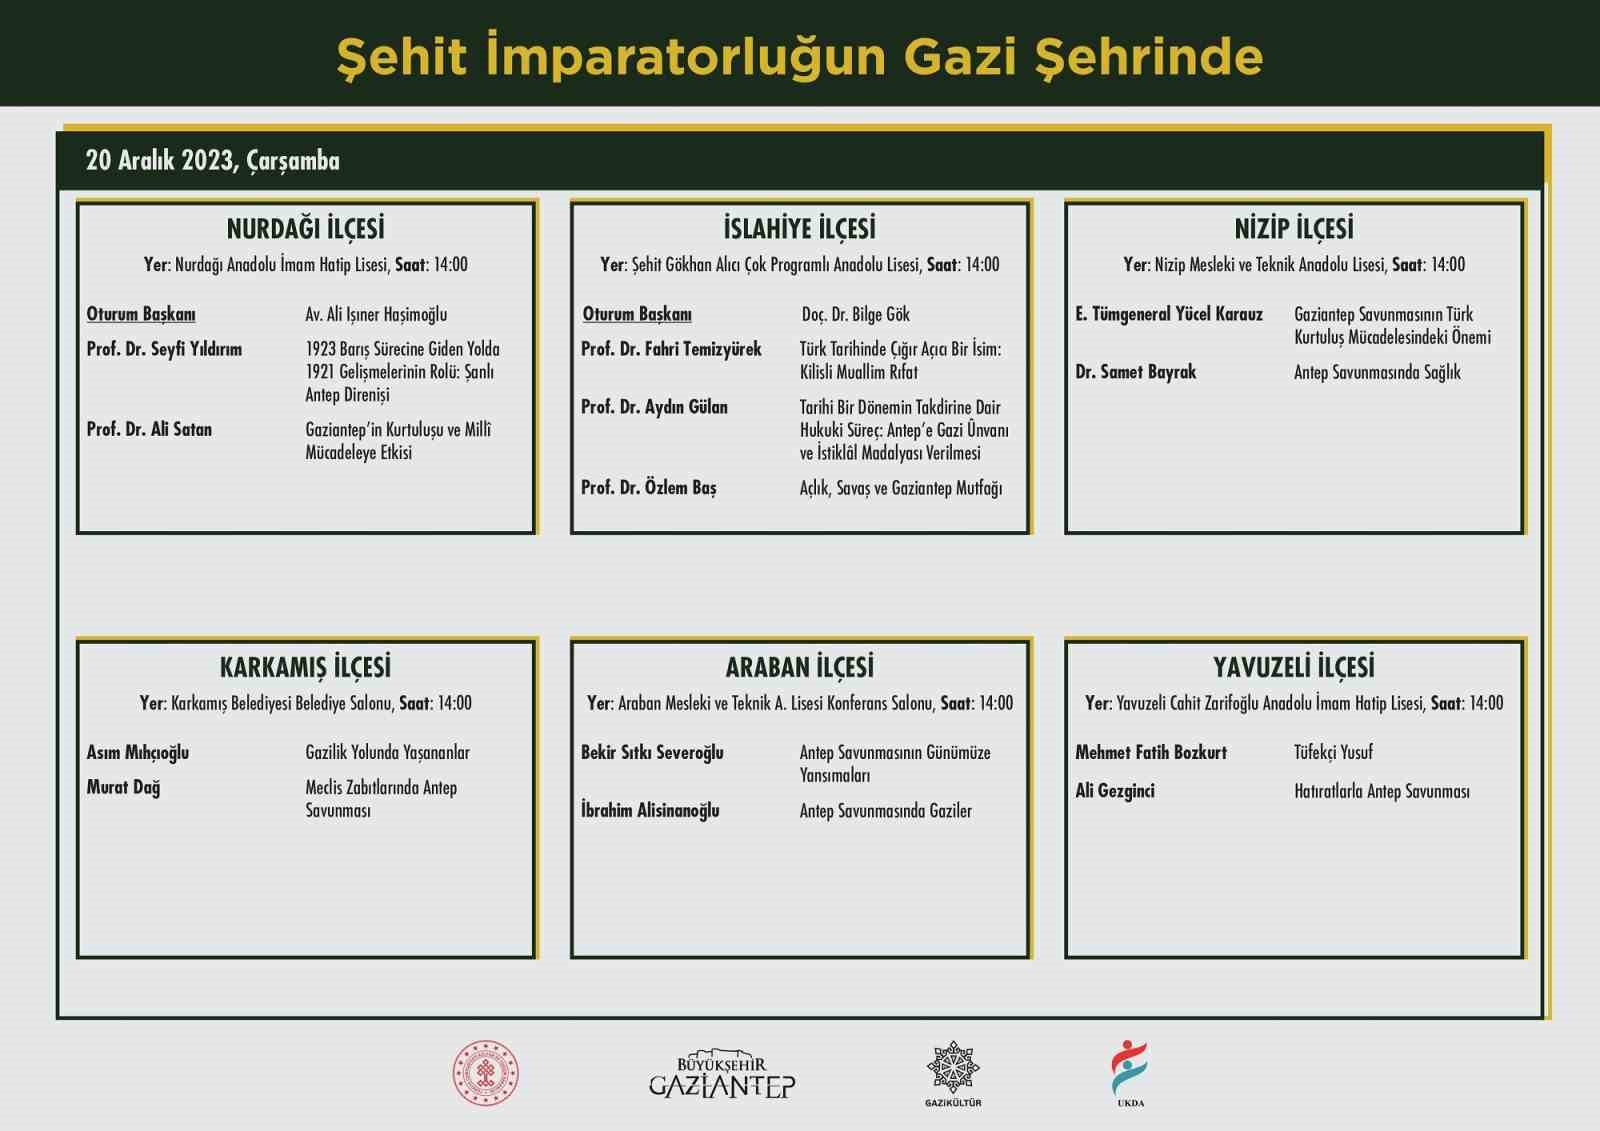 Gazikltr, Gazi ehrin her bir ilesinde kurtulu panelleri dzenliyor
